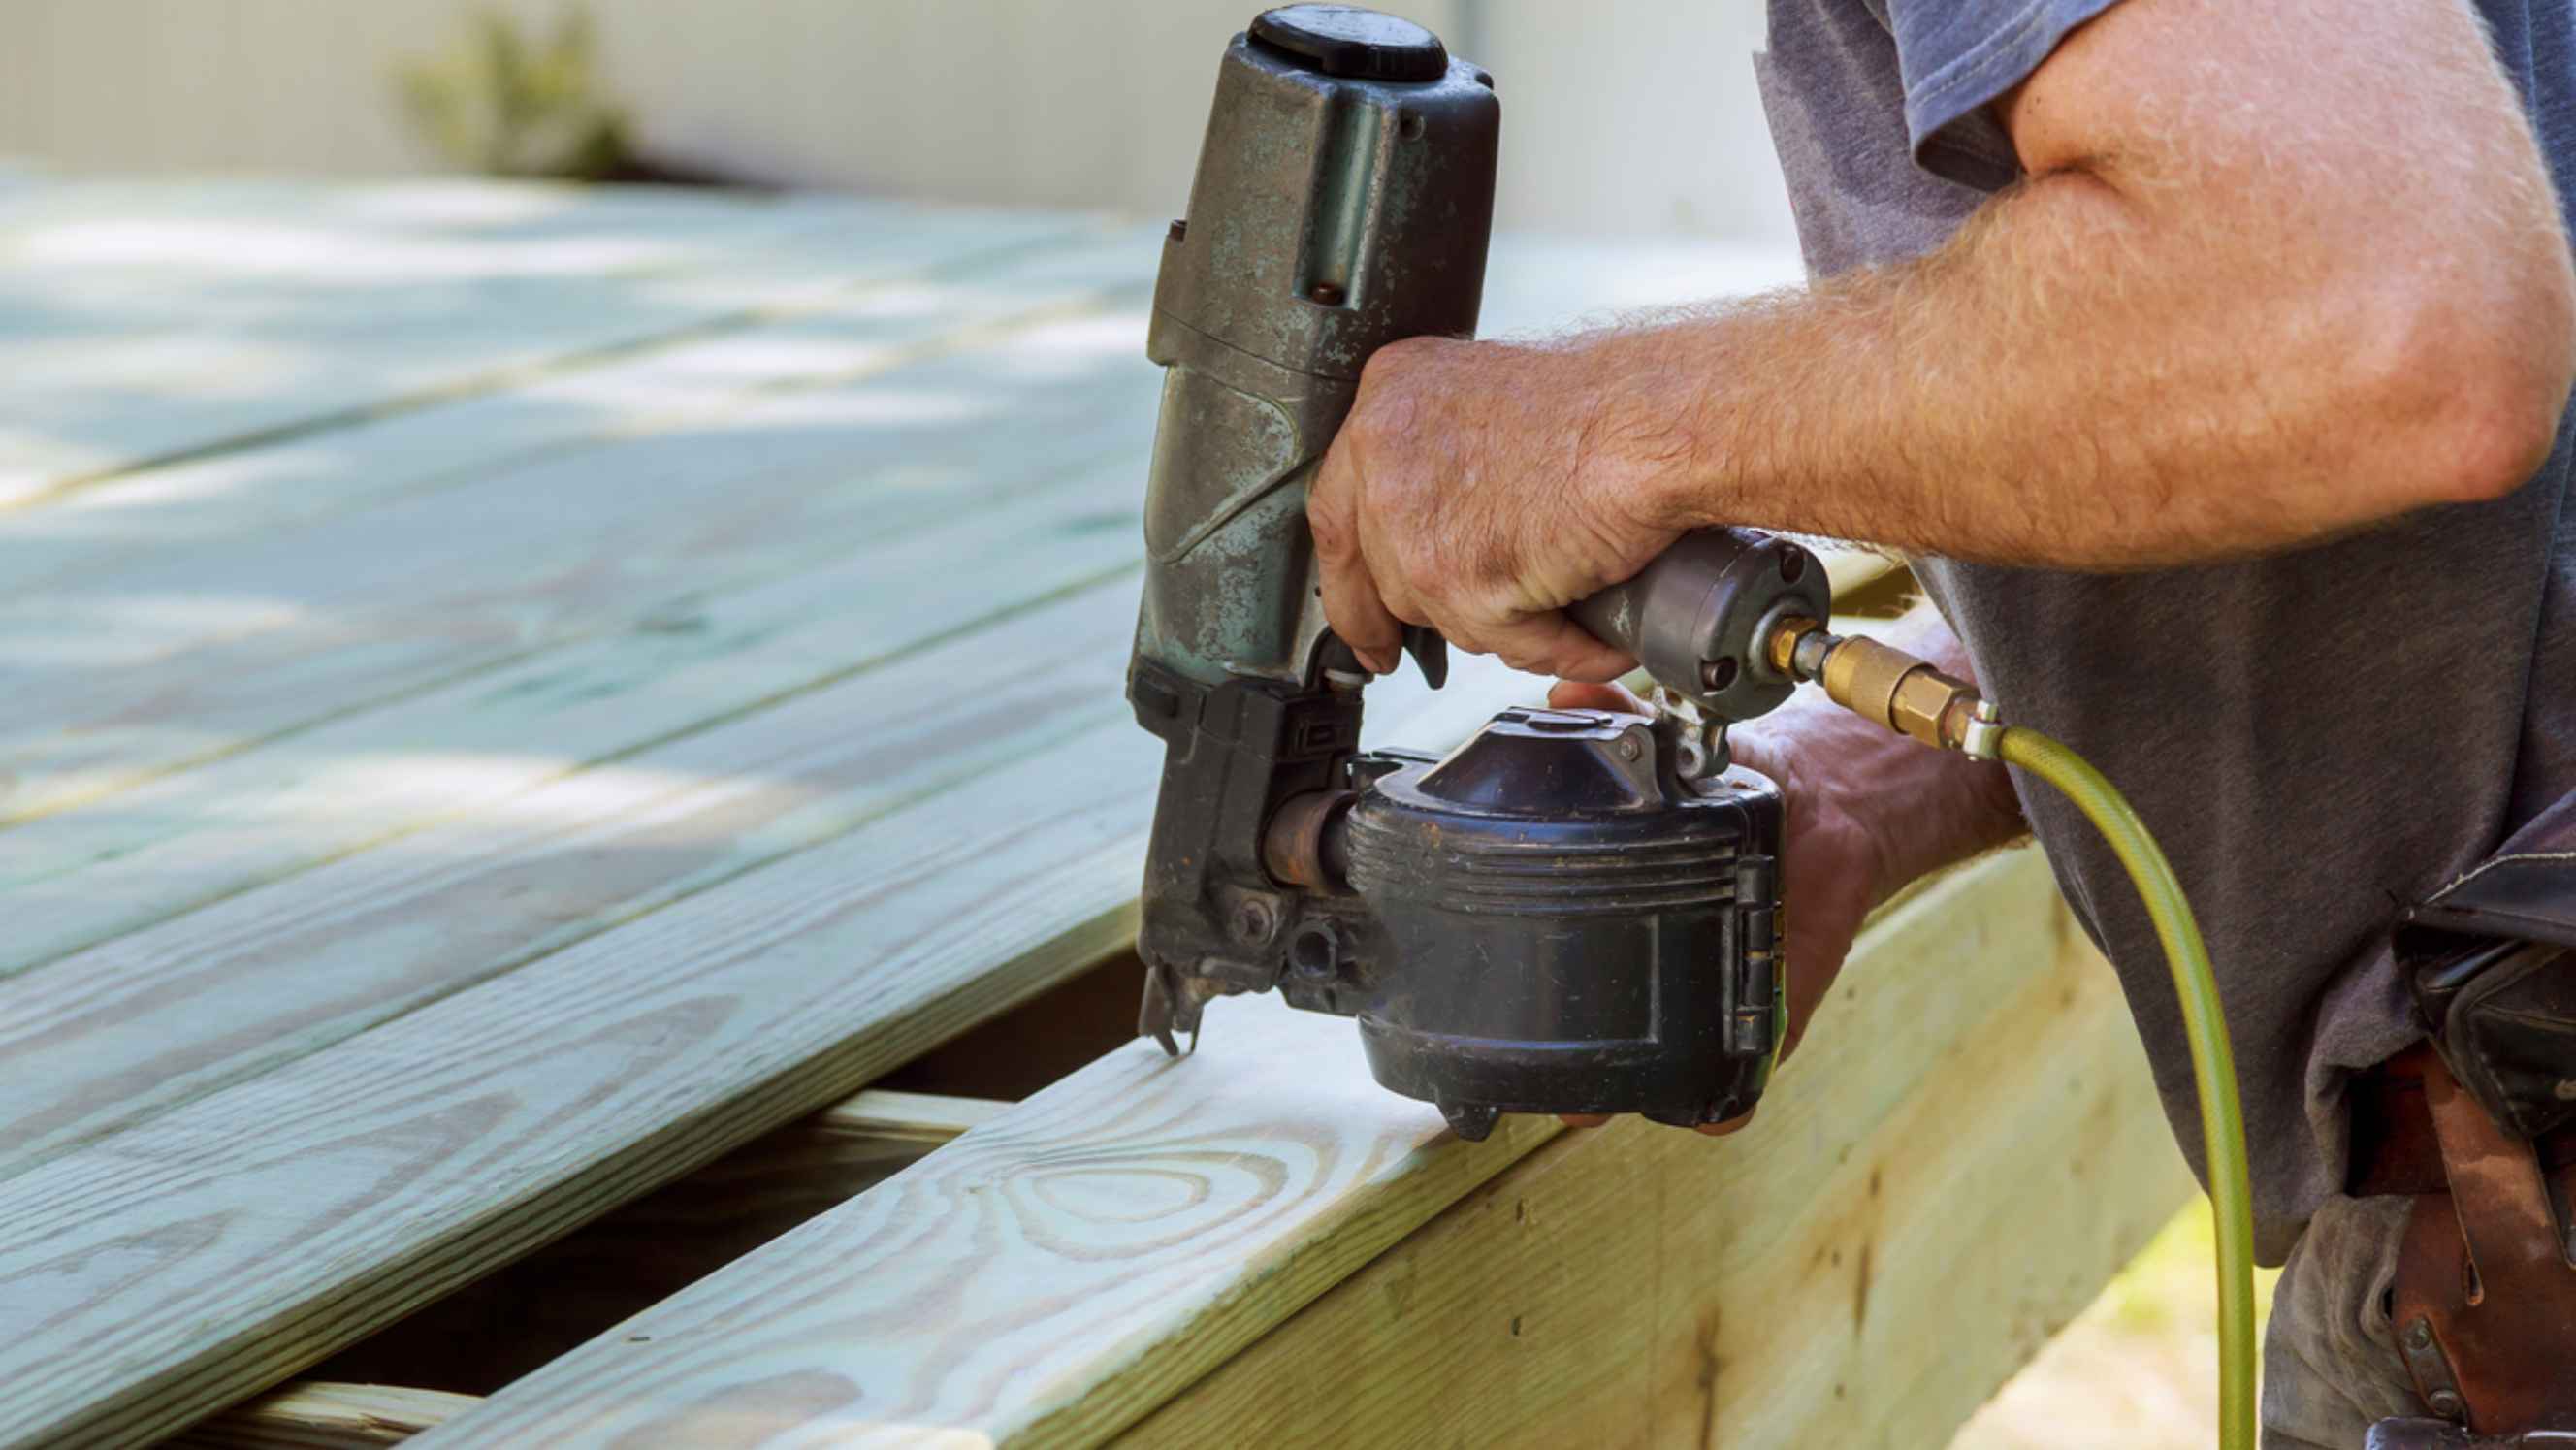 Nail gun vs staple gun - A person installing wood on deck using a nail gun